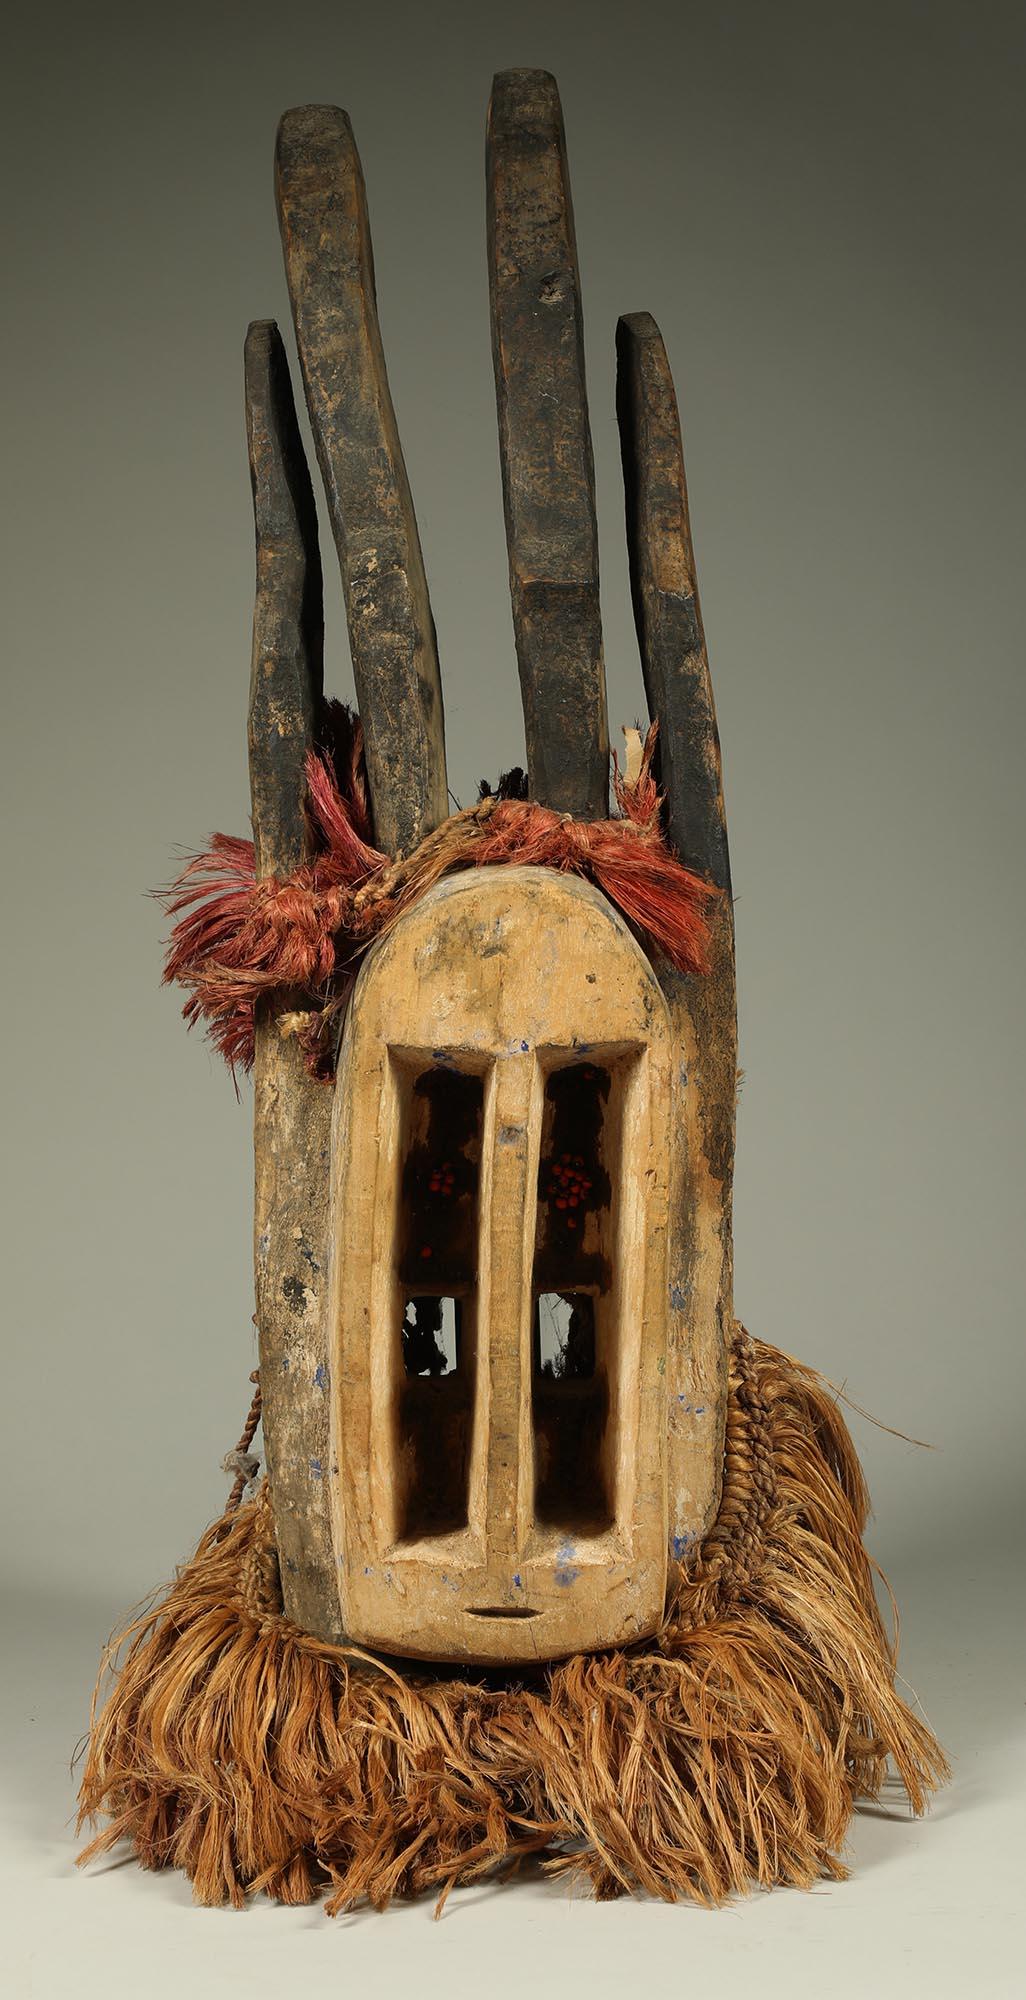 Kubistische Antilopenmaske aus geschnitztem Dogon-Holz mit angehängtem Raphia, aus Mali, Westafrika. Große vertikale Augen, kleiner geschlitzter Mund. Ein Paar geschnitzte, gebogene, geschwärzte Antilopenhörner ragen aus dem Kopf, lange, geschwärzte